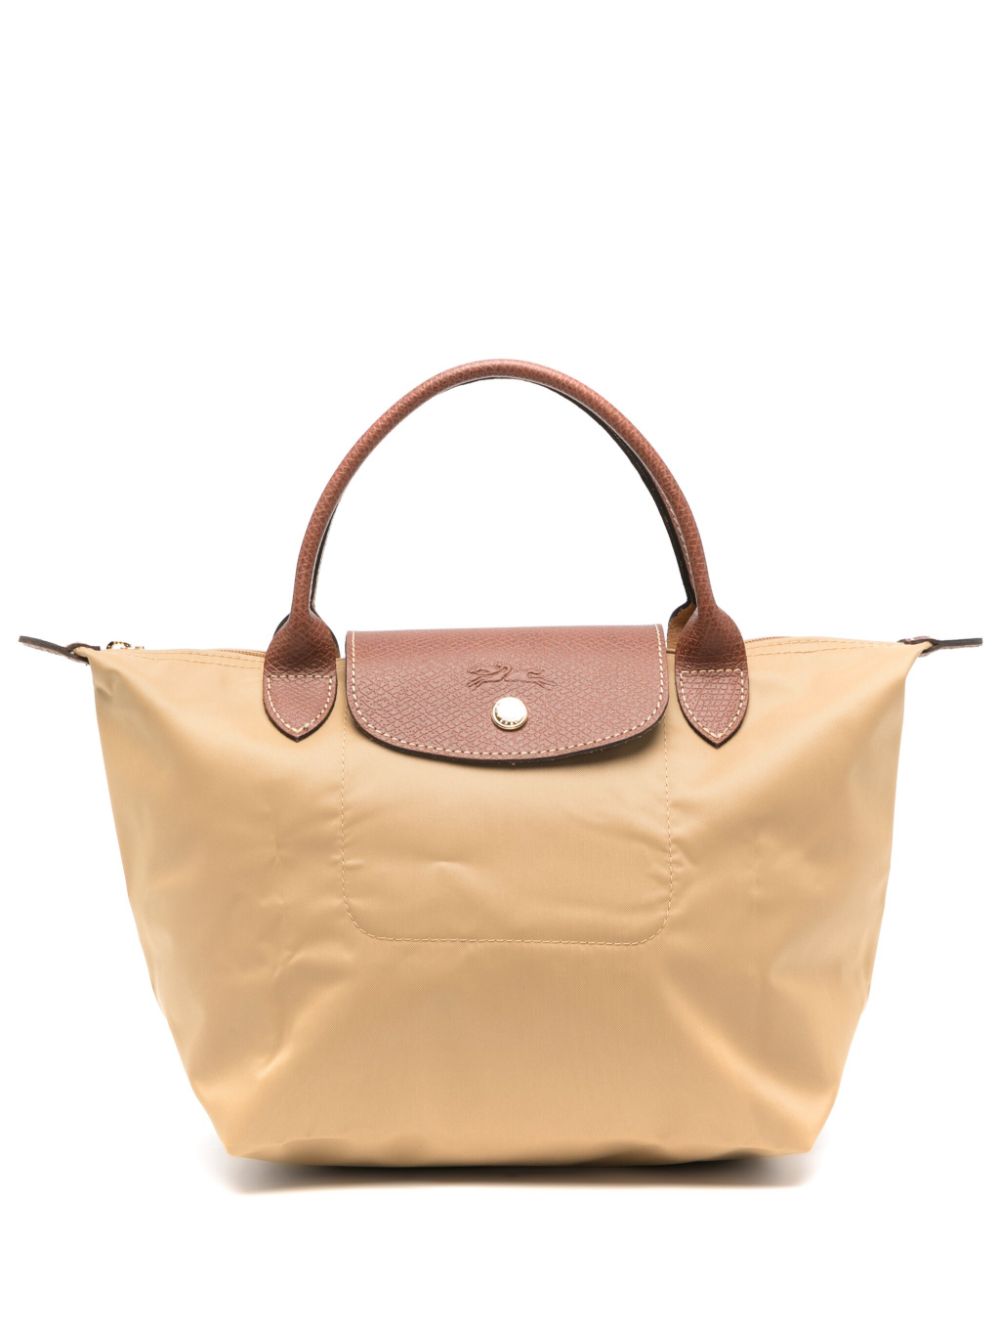 Longchamp Small Le Pliage Original Tote Bag In Neutrals